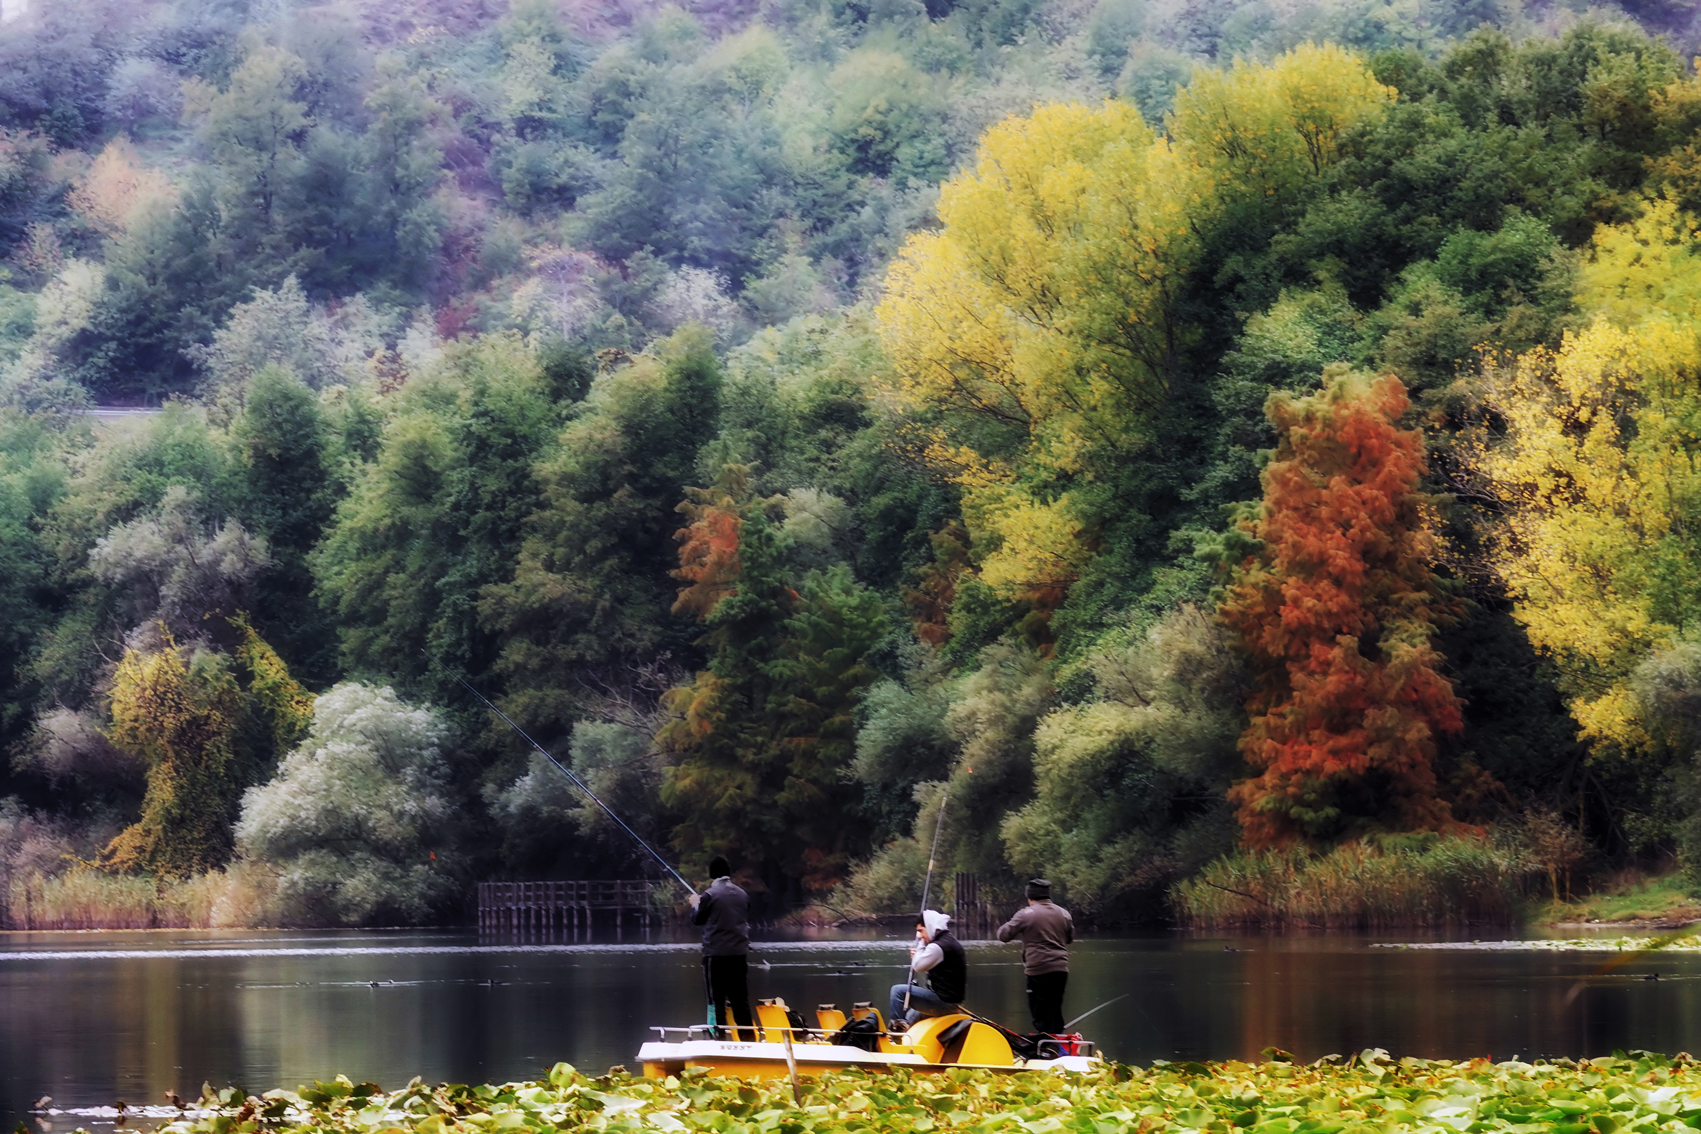 Pescatori al lago...